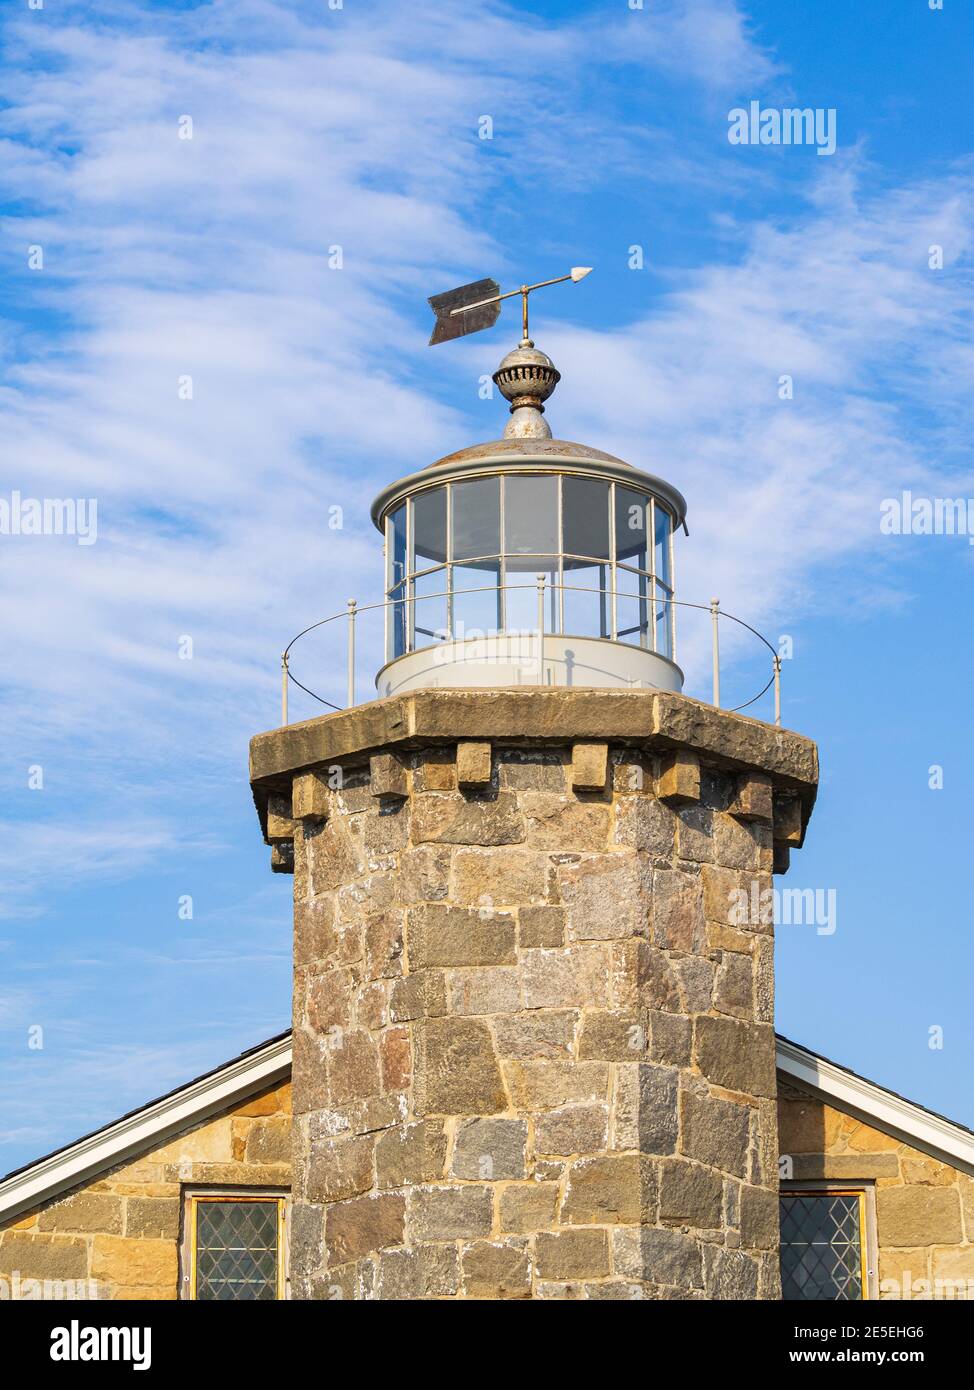 La tour du phare de Stonington avec sa belle pierre de granit du XIXe siècle et son belette flèche, Stonington, Connecticut, juillet 2017. B Banque D'Images